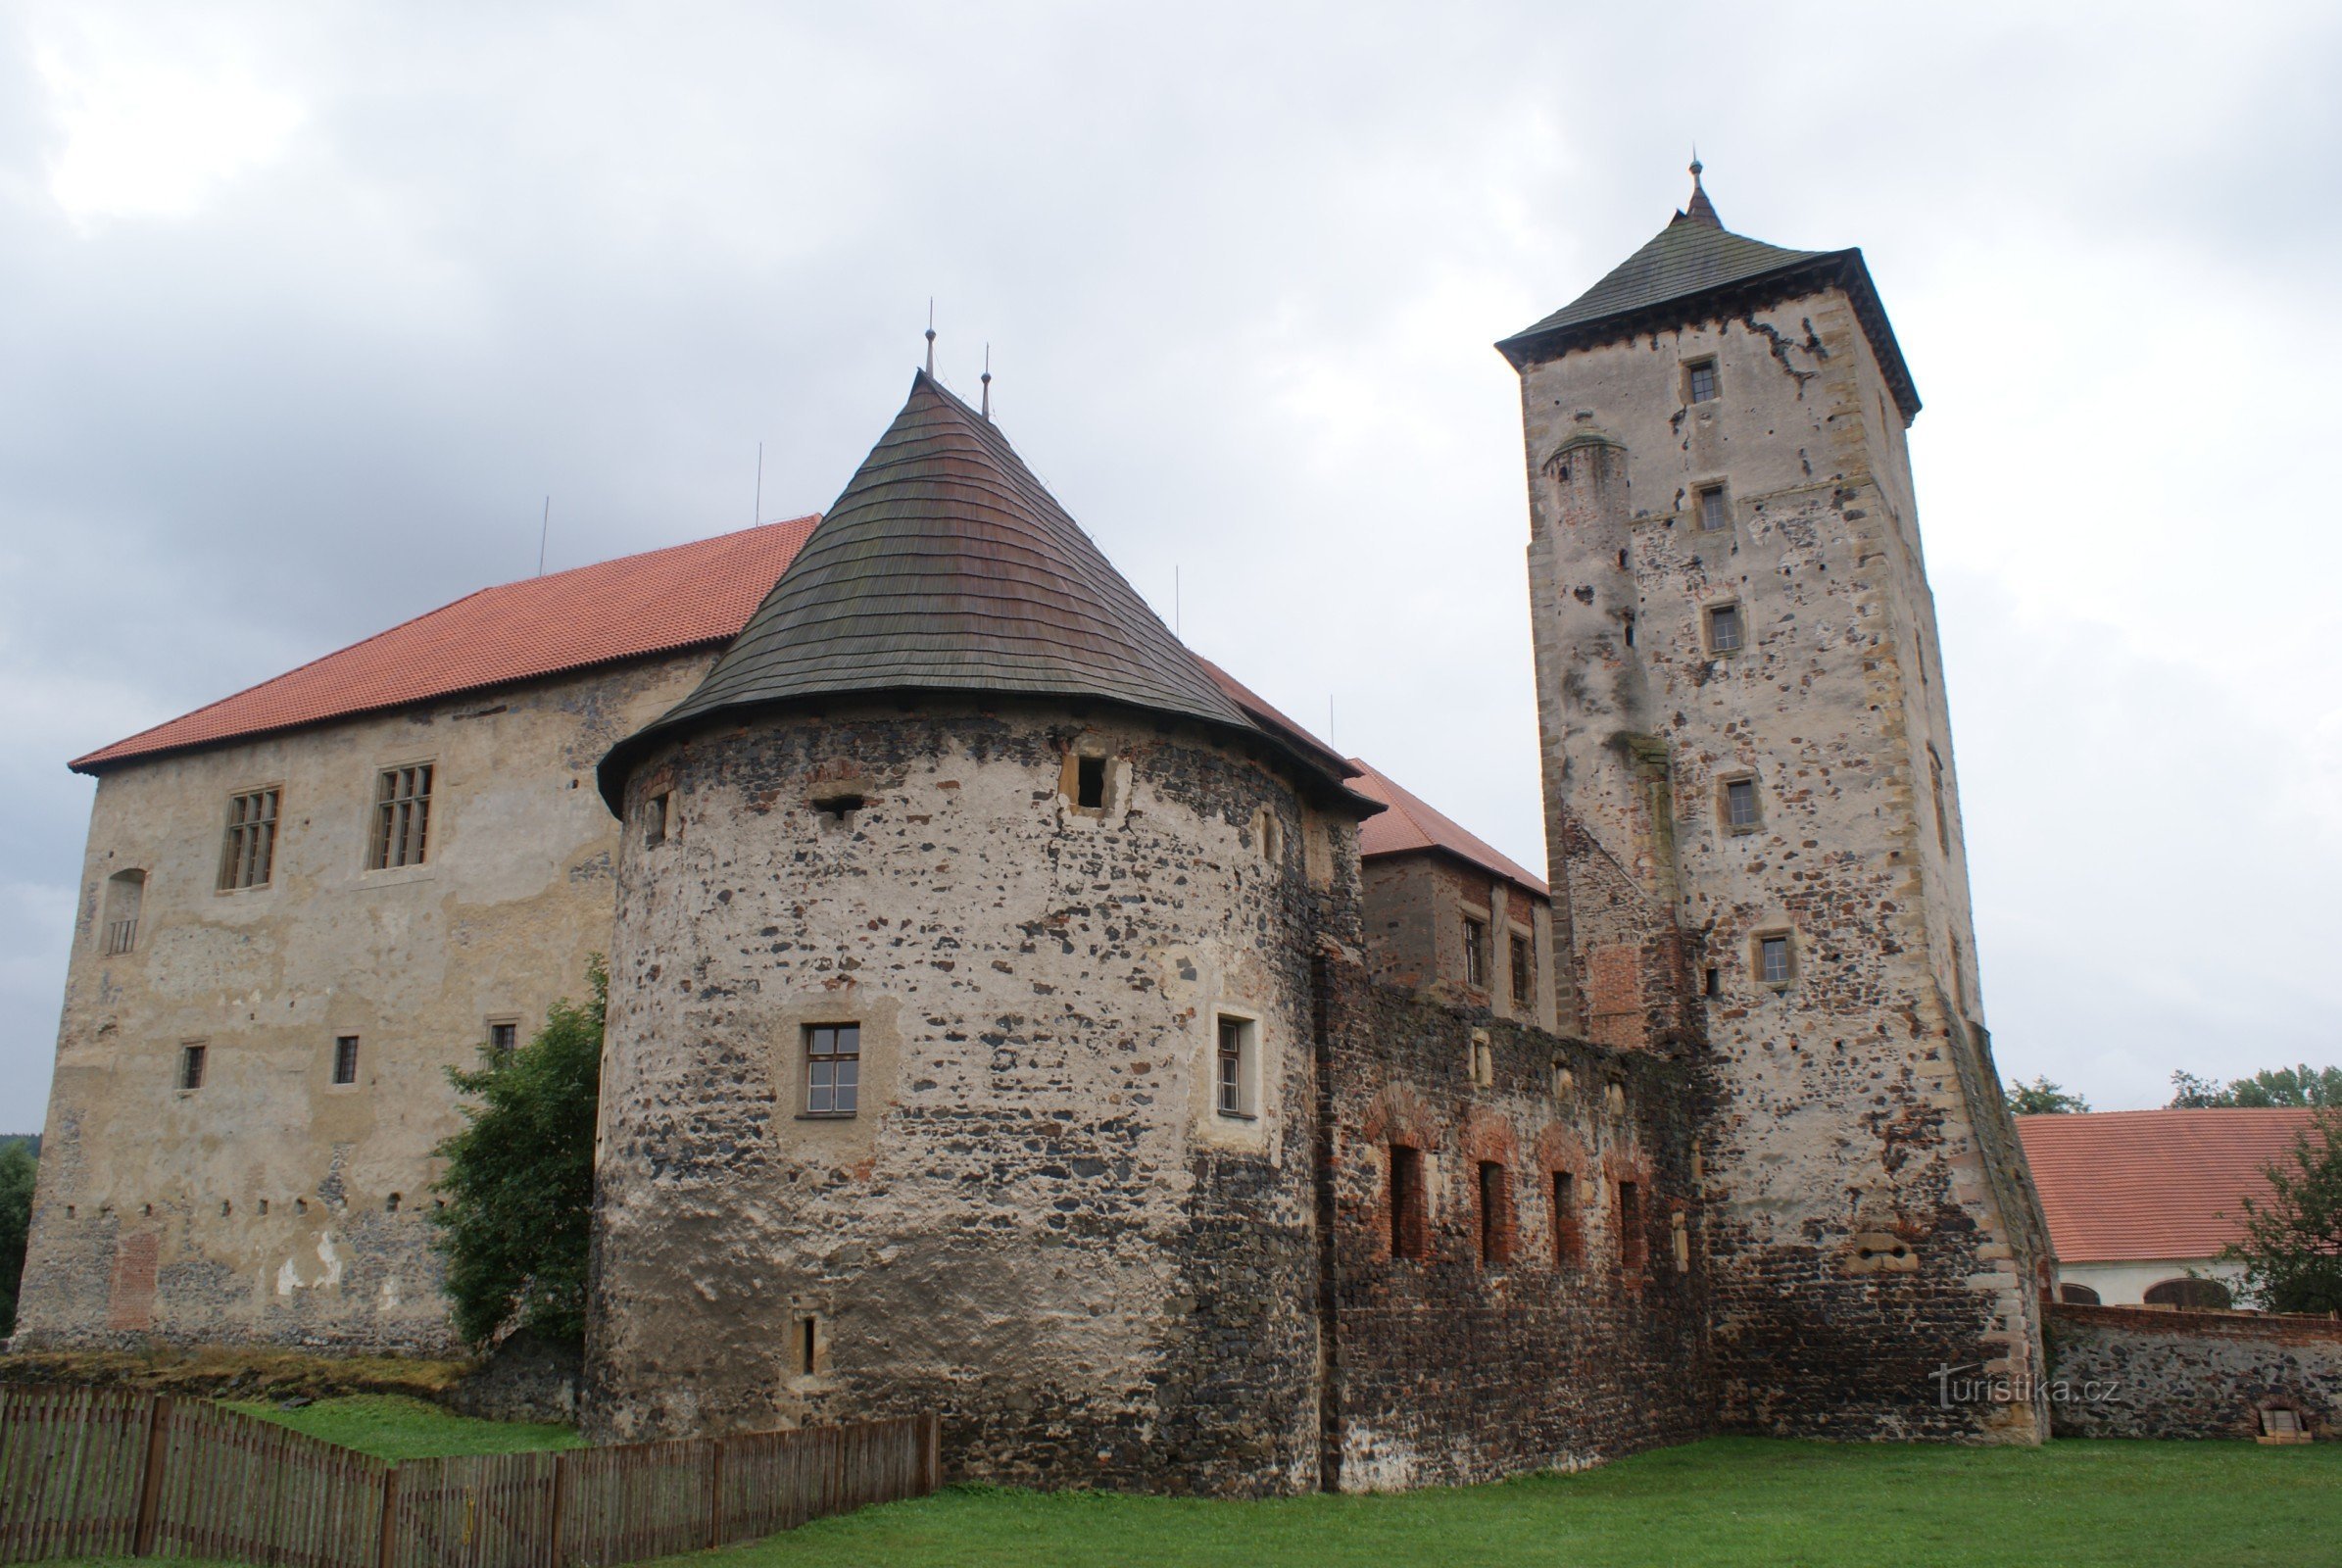 Švihov - et vandslot og en perle af befæstningsarkitektur (slottets historie og udseende)